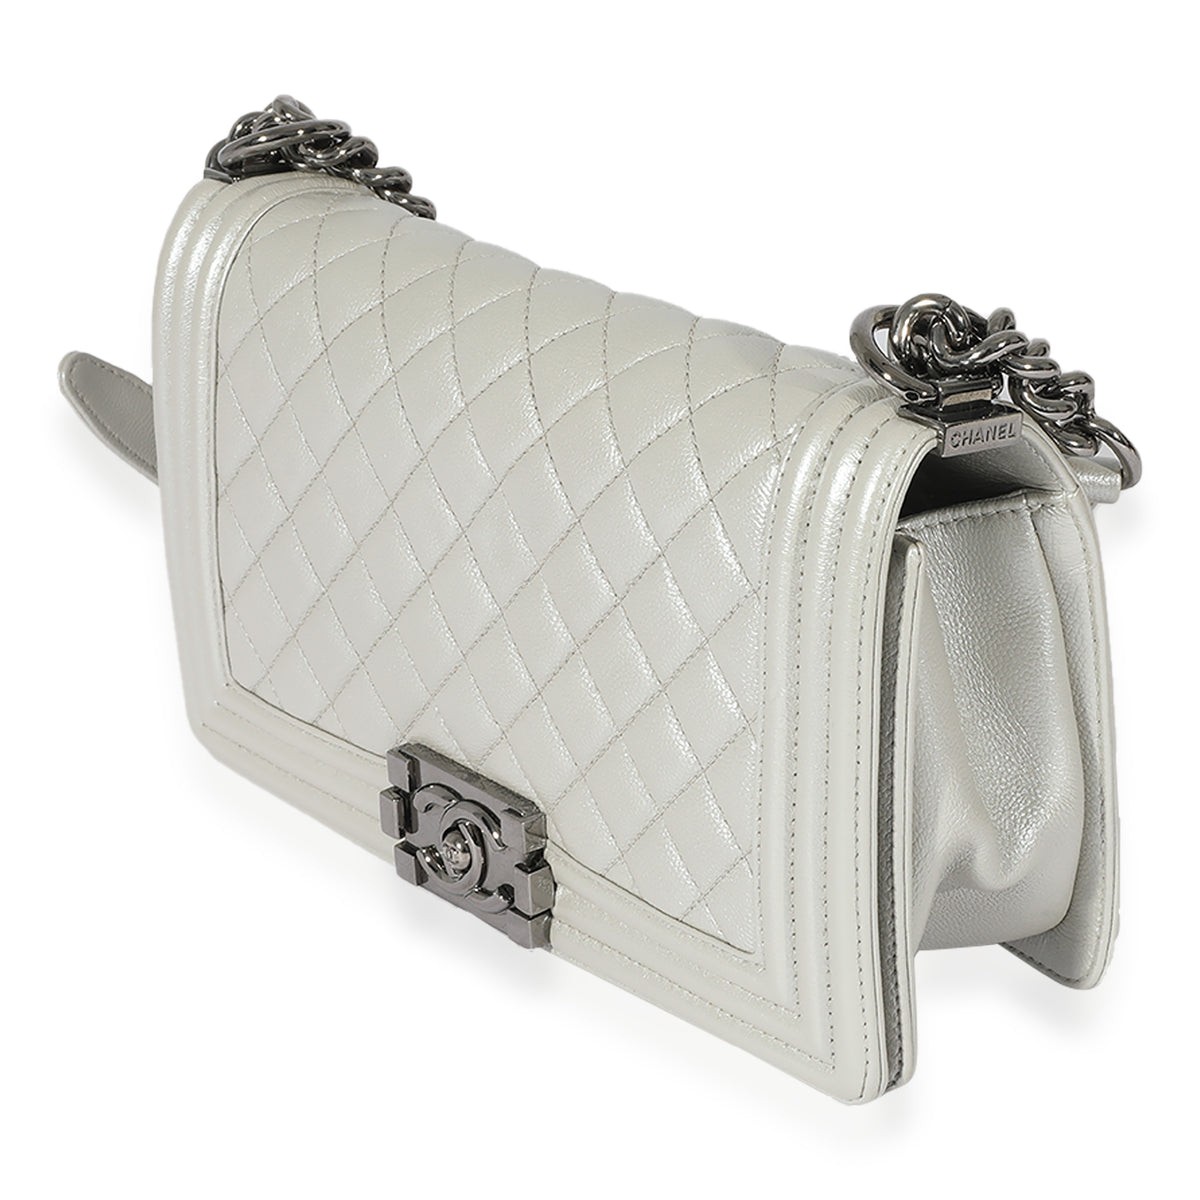 Chanel Silver Quilted Caviar Medium Boy Bag, myGemma, GB